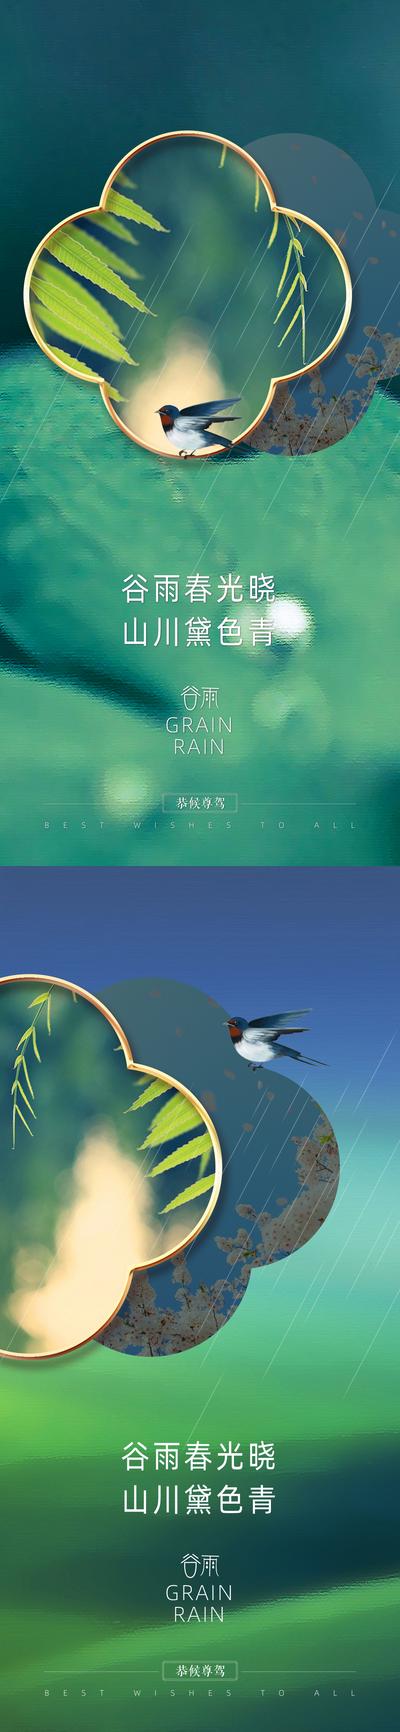 南门网 海报 房地产 二十四节气 春分 谷雨 雨水 燕子 